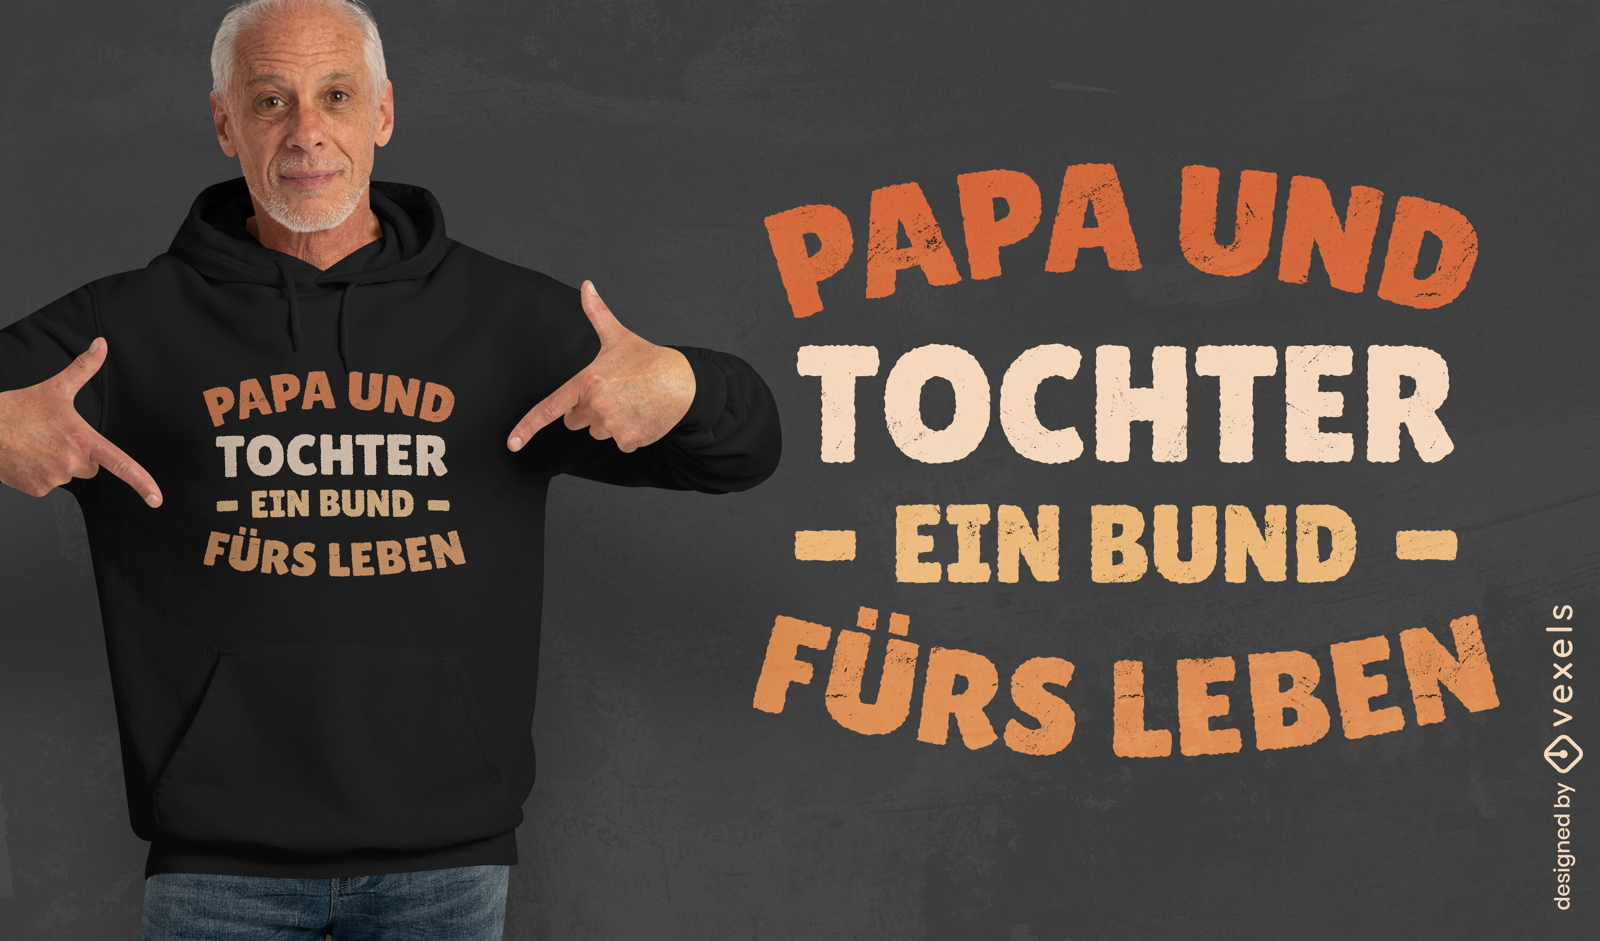 T-Shirt-Design mit Zitat zur Bindung zwischen Vater und Tochter